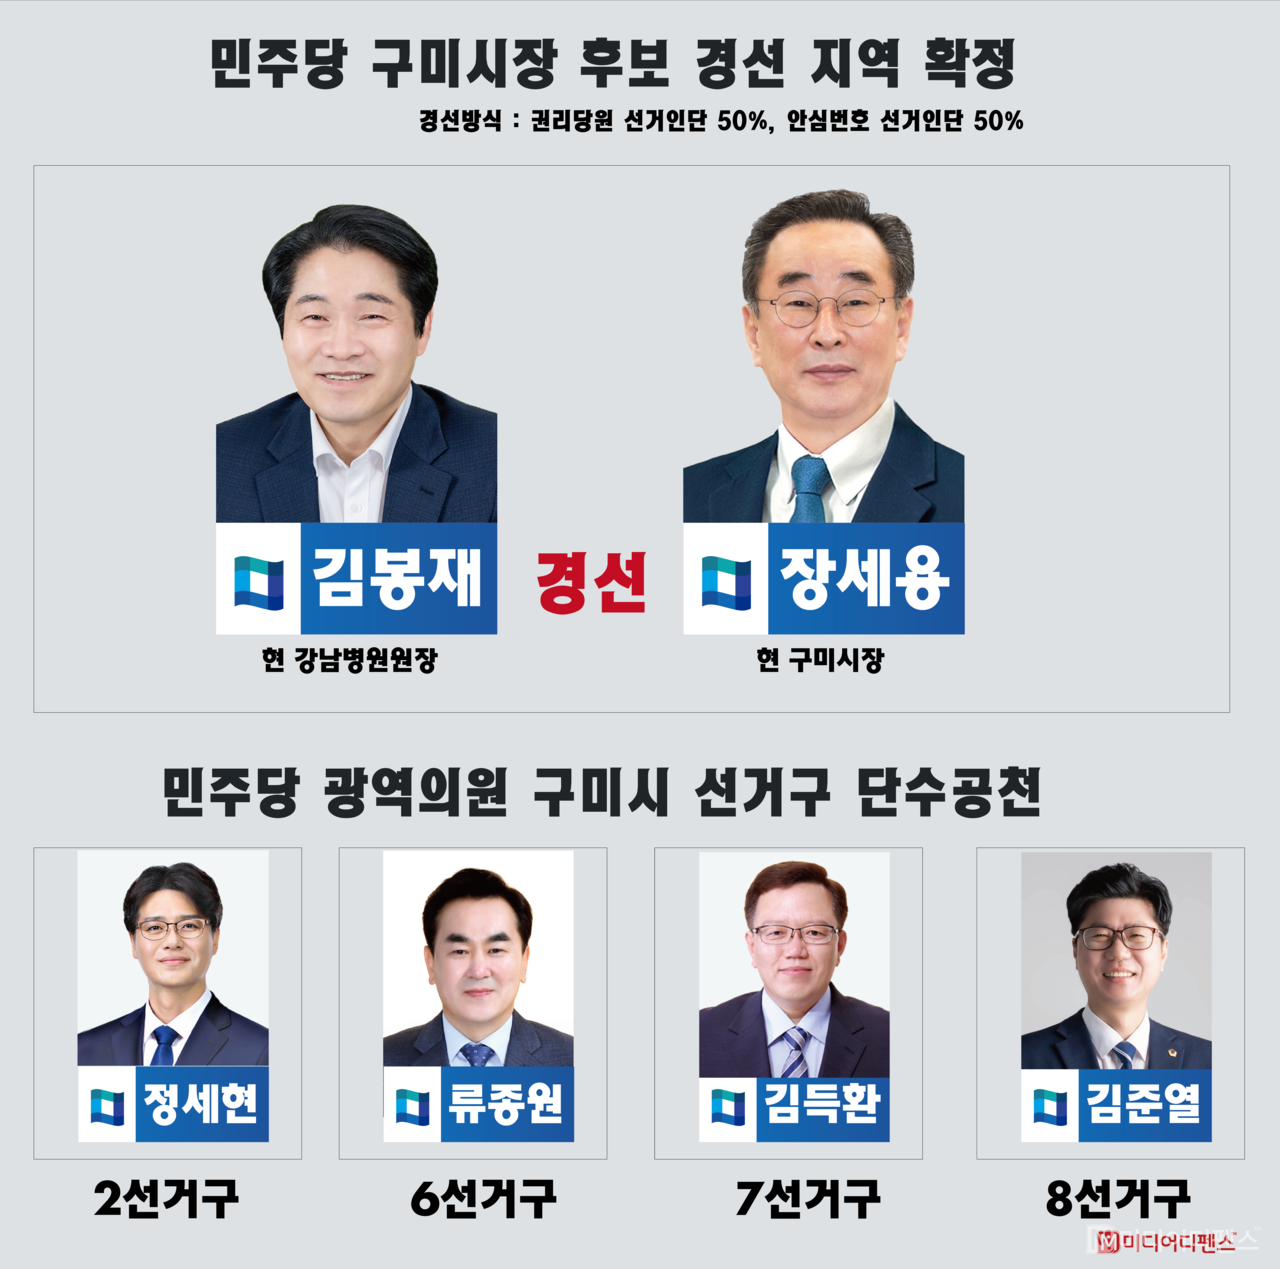 민주당 경선 단수공천 결과 발표